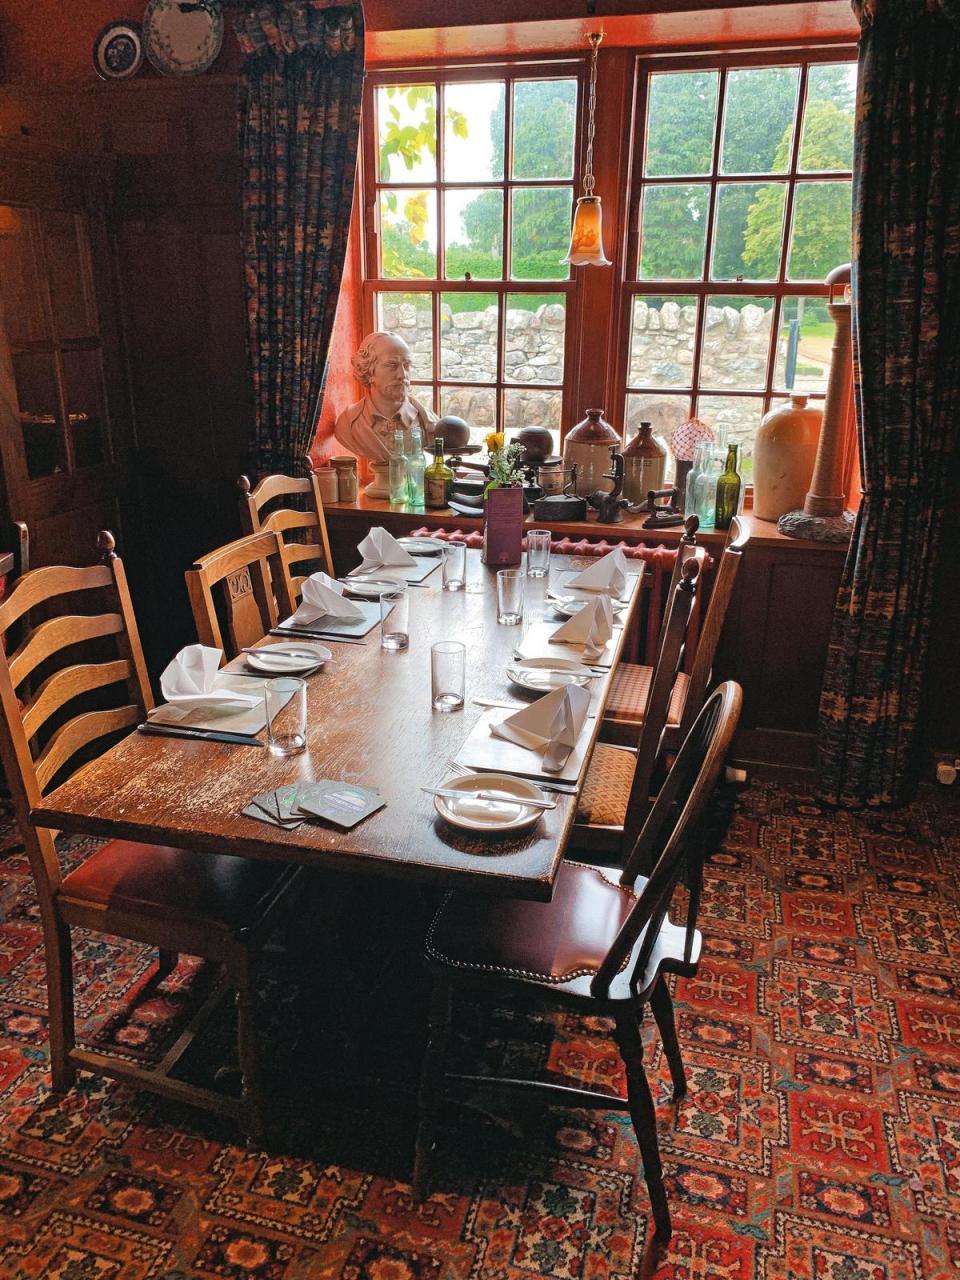 下午參訪酒廠前，可先到Cawdor Tavern用餐，但記得先訂位。這裡離莎士比亞《馬克白》場景Cawdor Castle也很近。